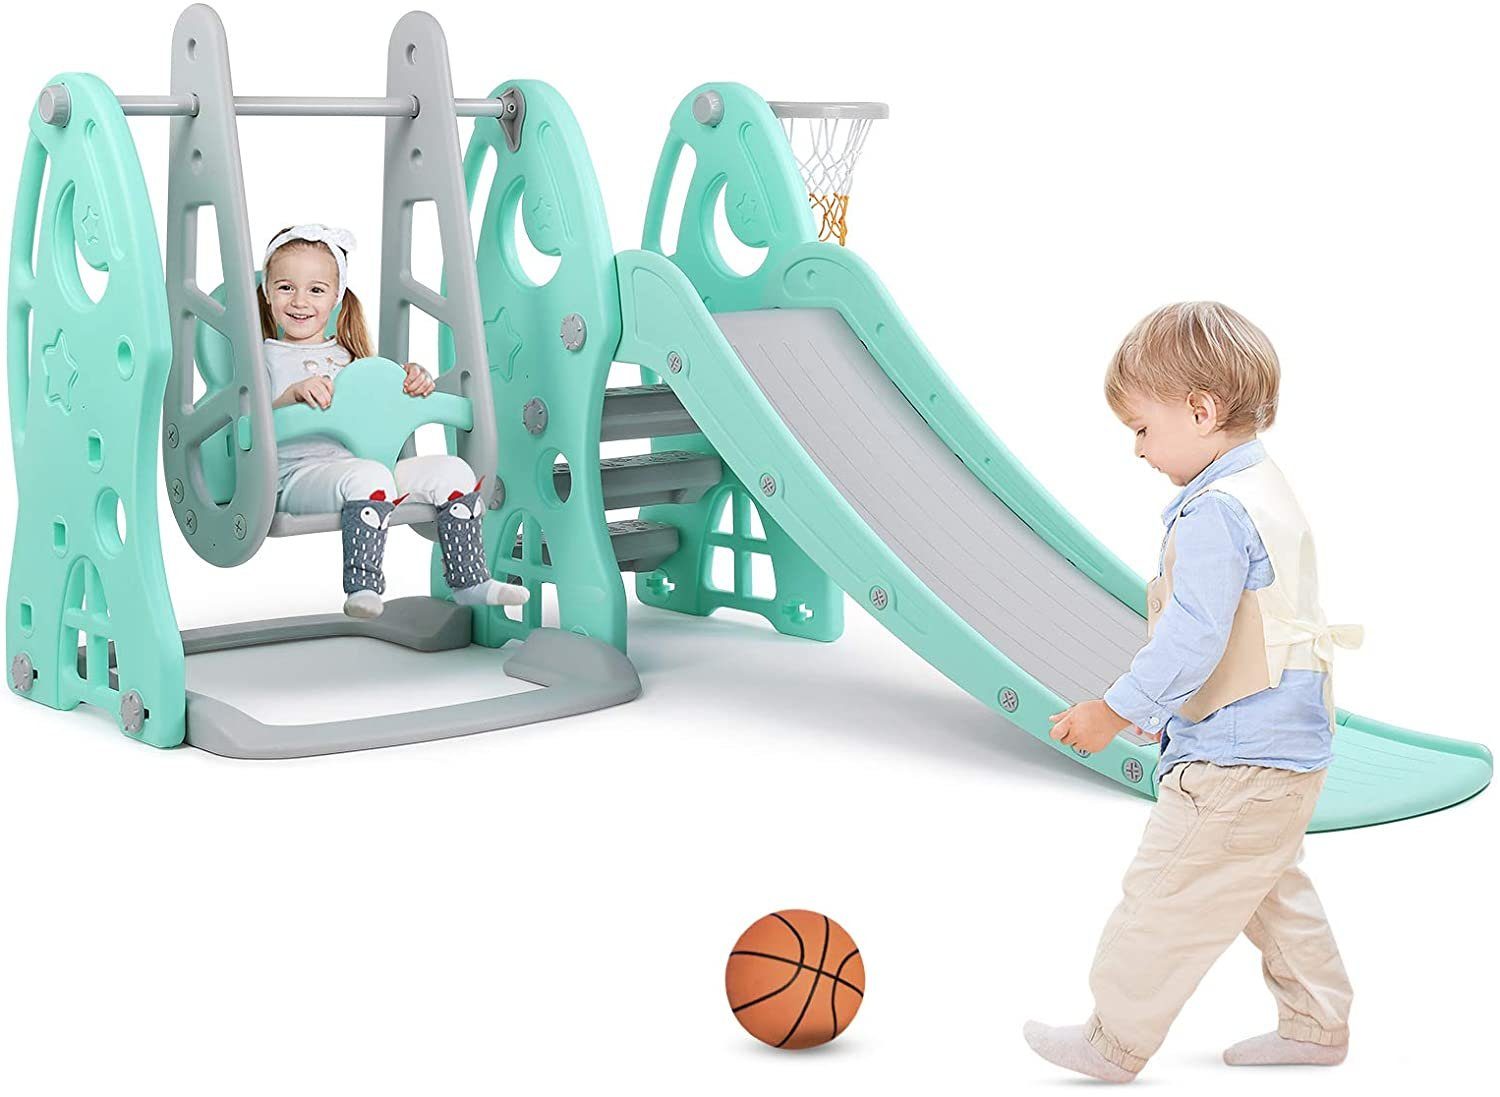 Pilsan Kinderrutsche 06142 mit Basketballkorb und Ball 152 cm Rutschlänge 